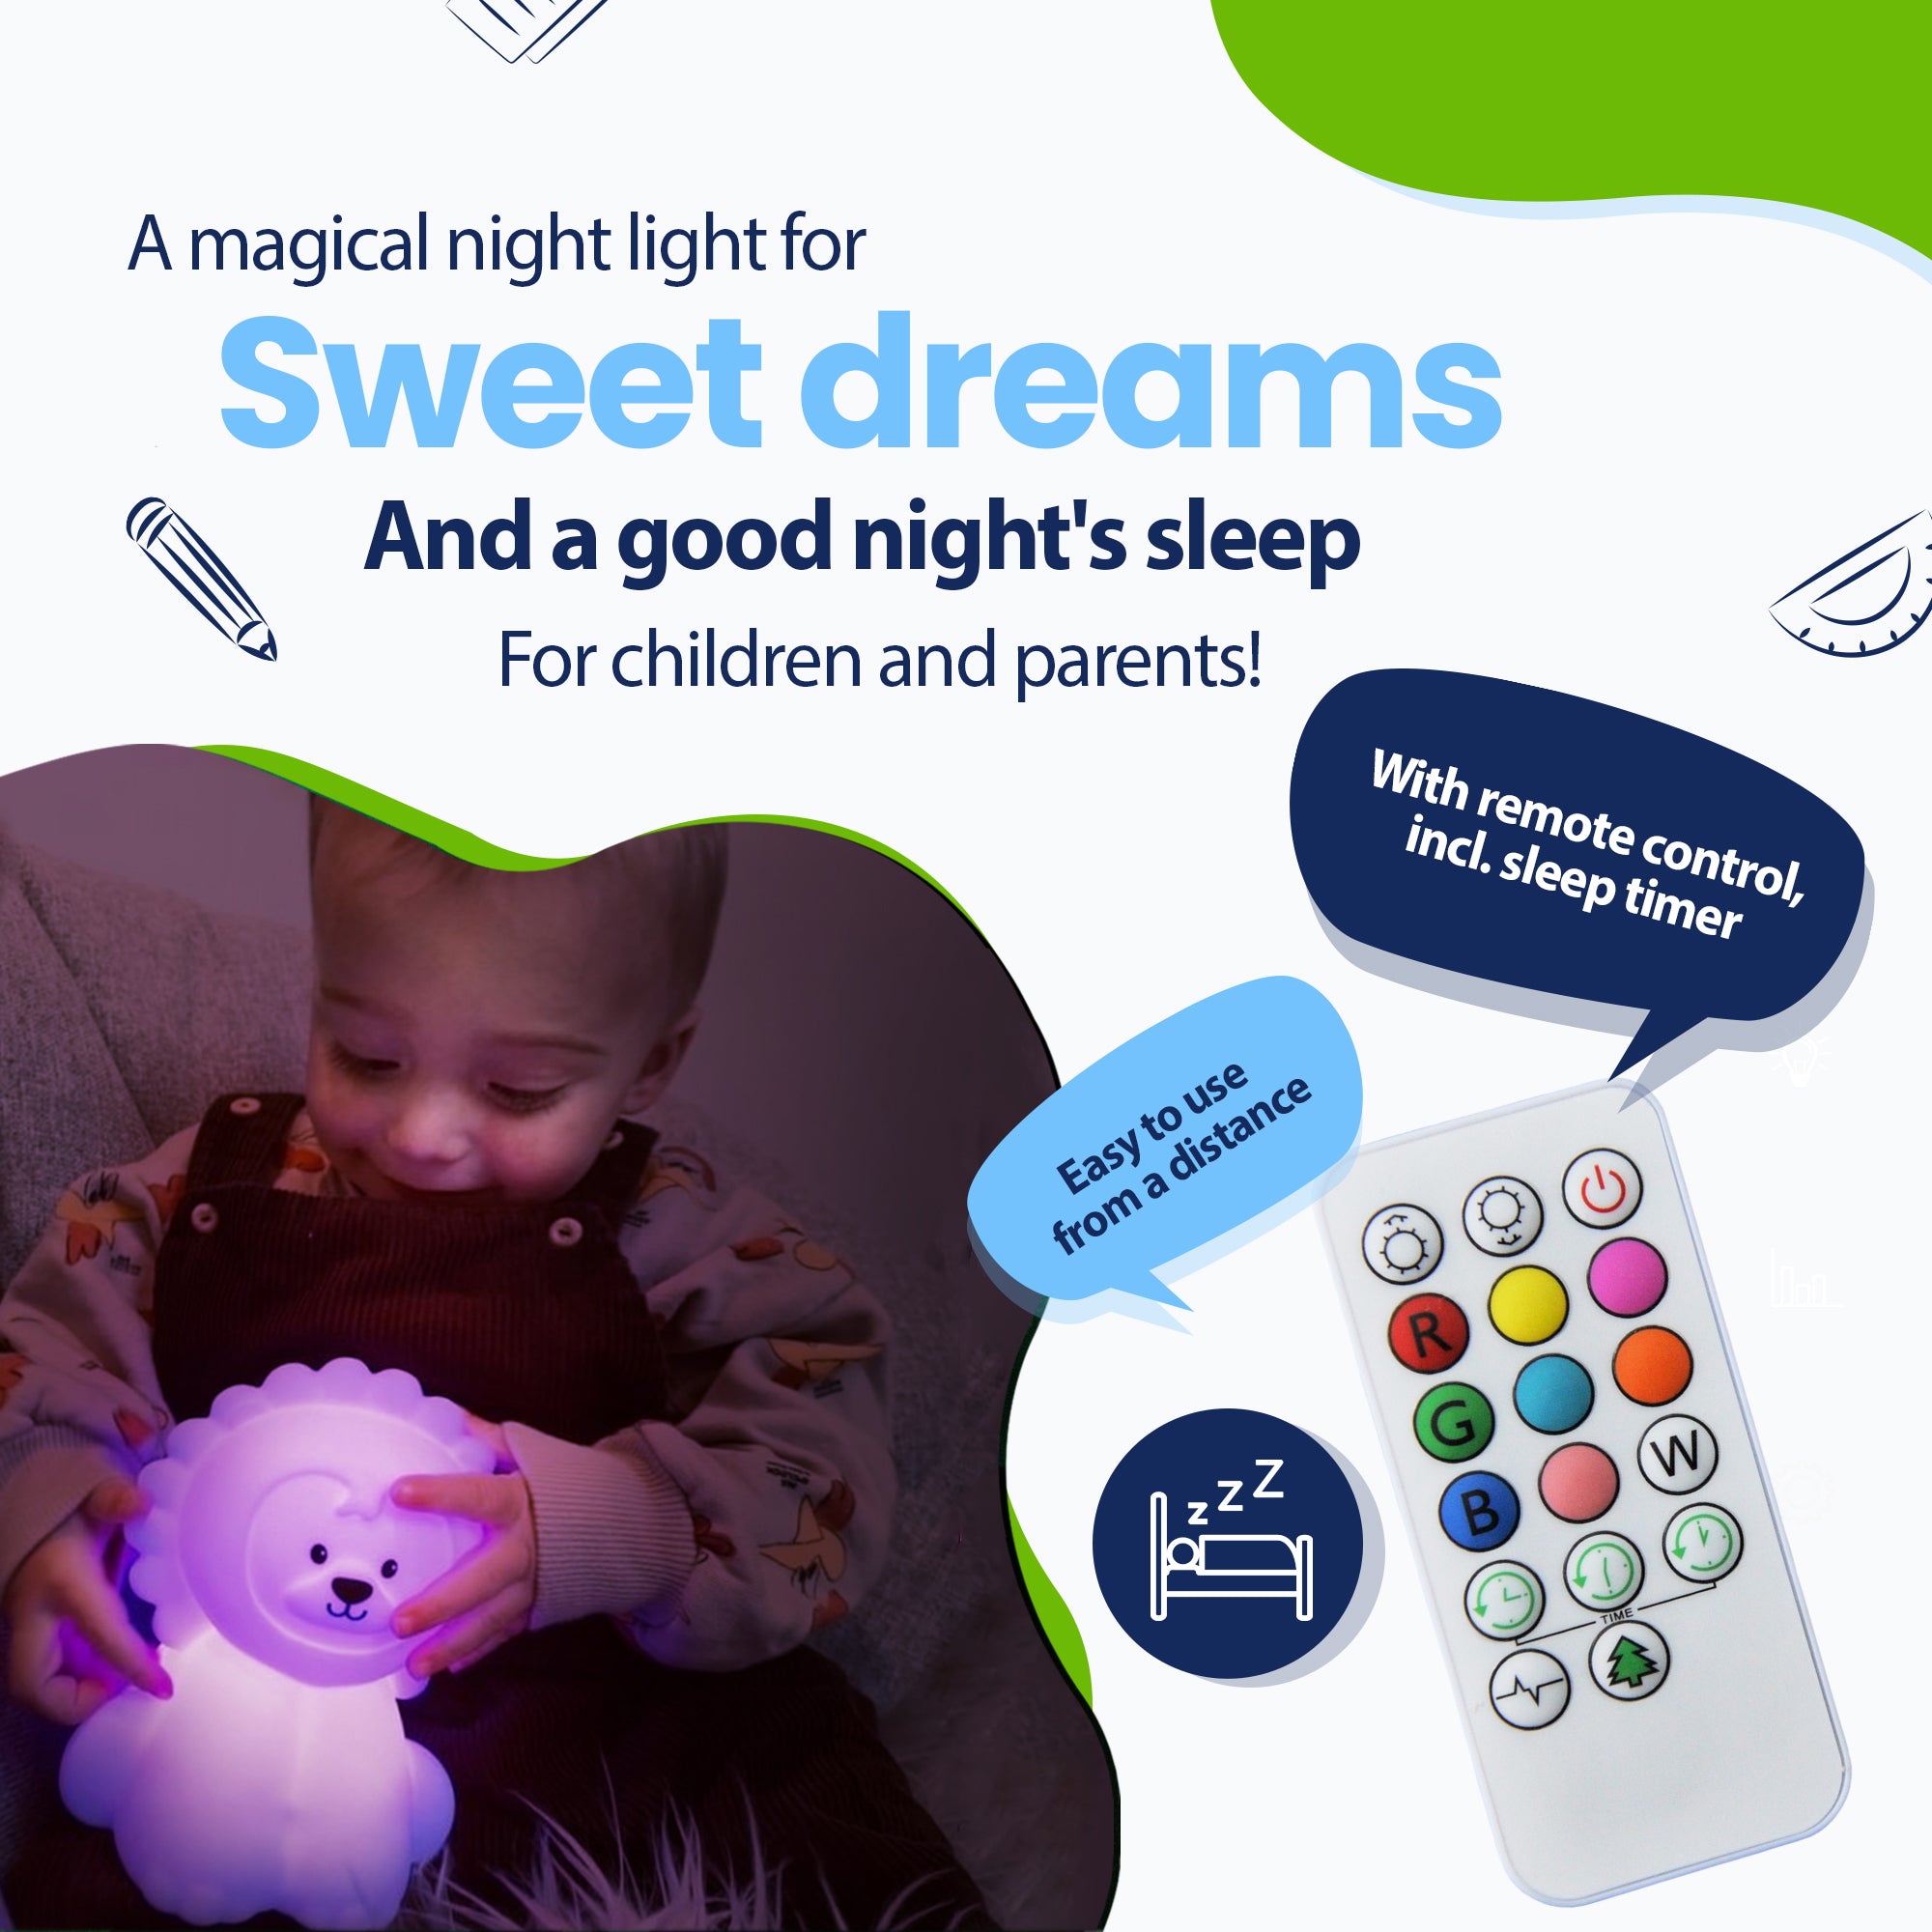 Uma luz noturna mágica para sonhos agradáveis ​​e uma noite de sono saudável para crianças e pais - com controle remoto incluindo temporizador - facilmente à distância